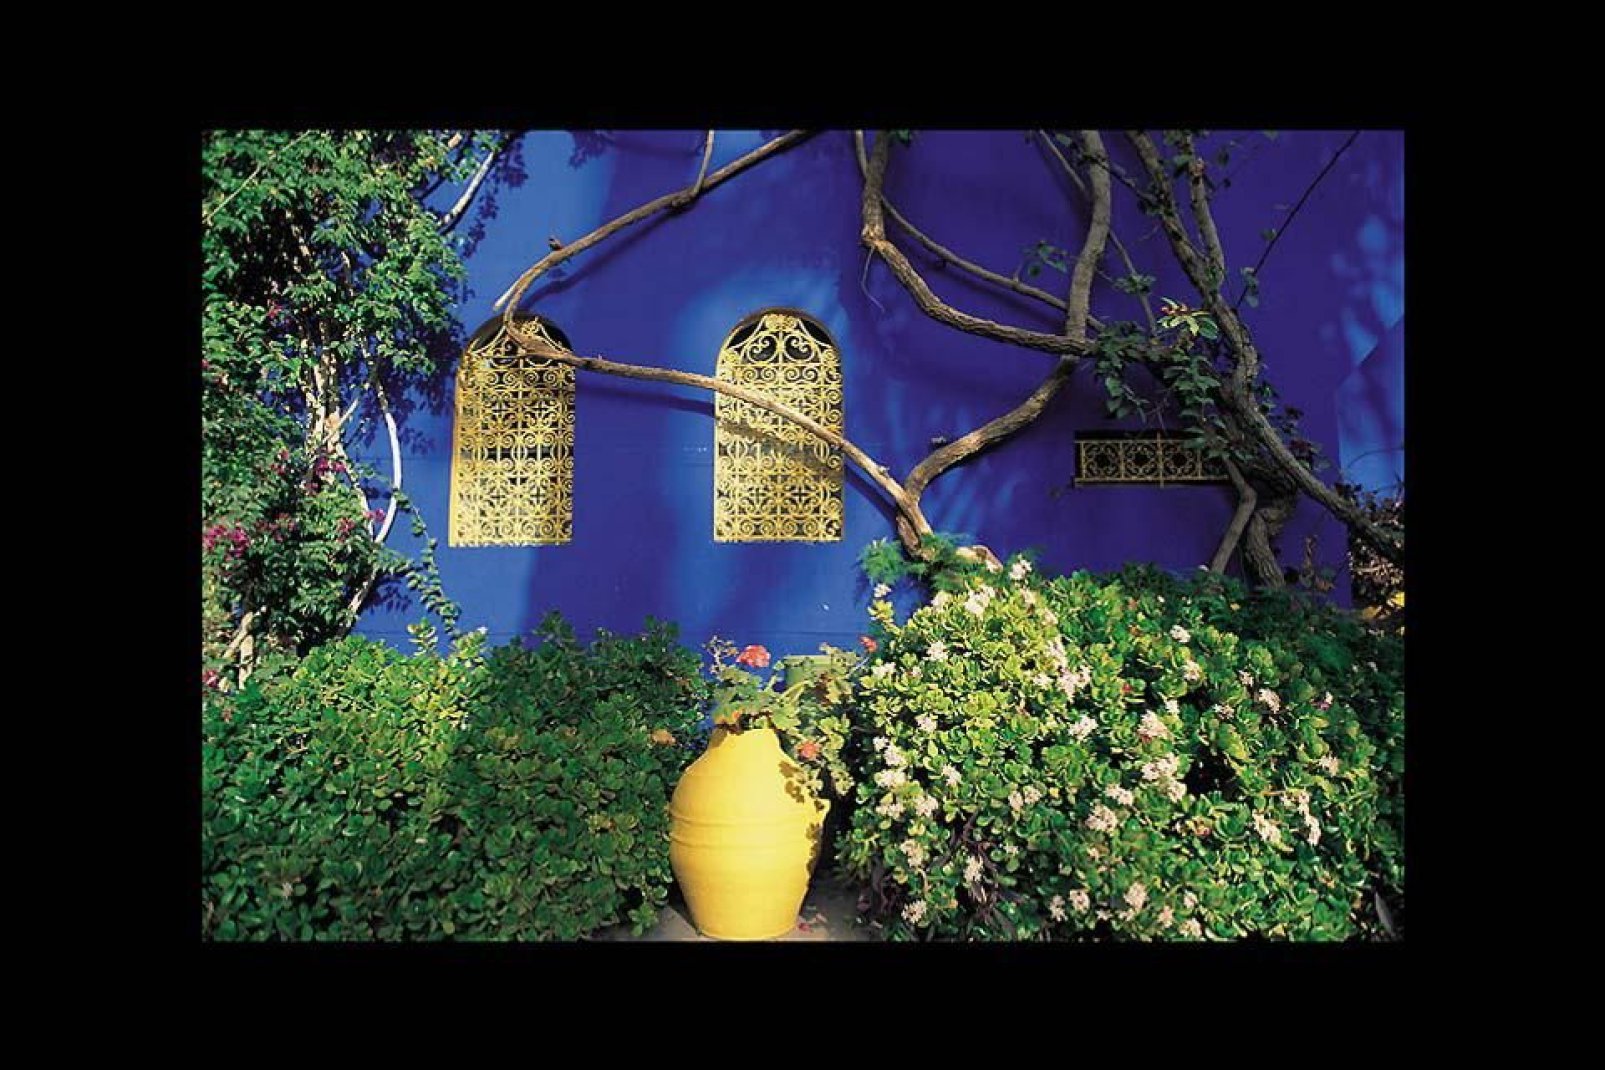 Der botanische Garten "Majorelle" zählt zu den wichtigsten Sehenswürdigkeiten von Marrakech. Hier können Sie seltene Pflanzen in einer höchst zauberhaften Umgebung bewundern.